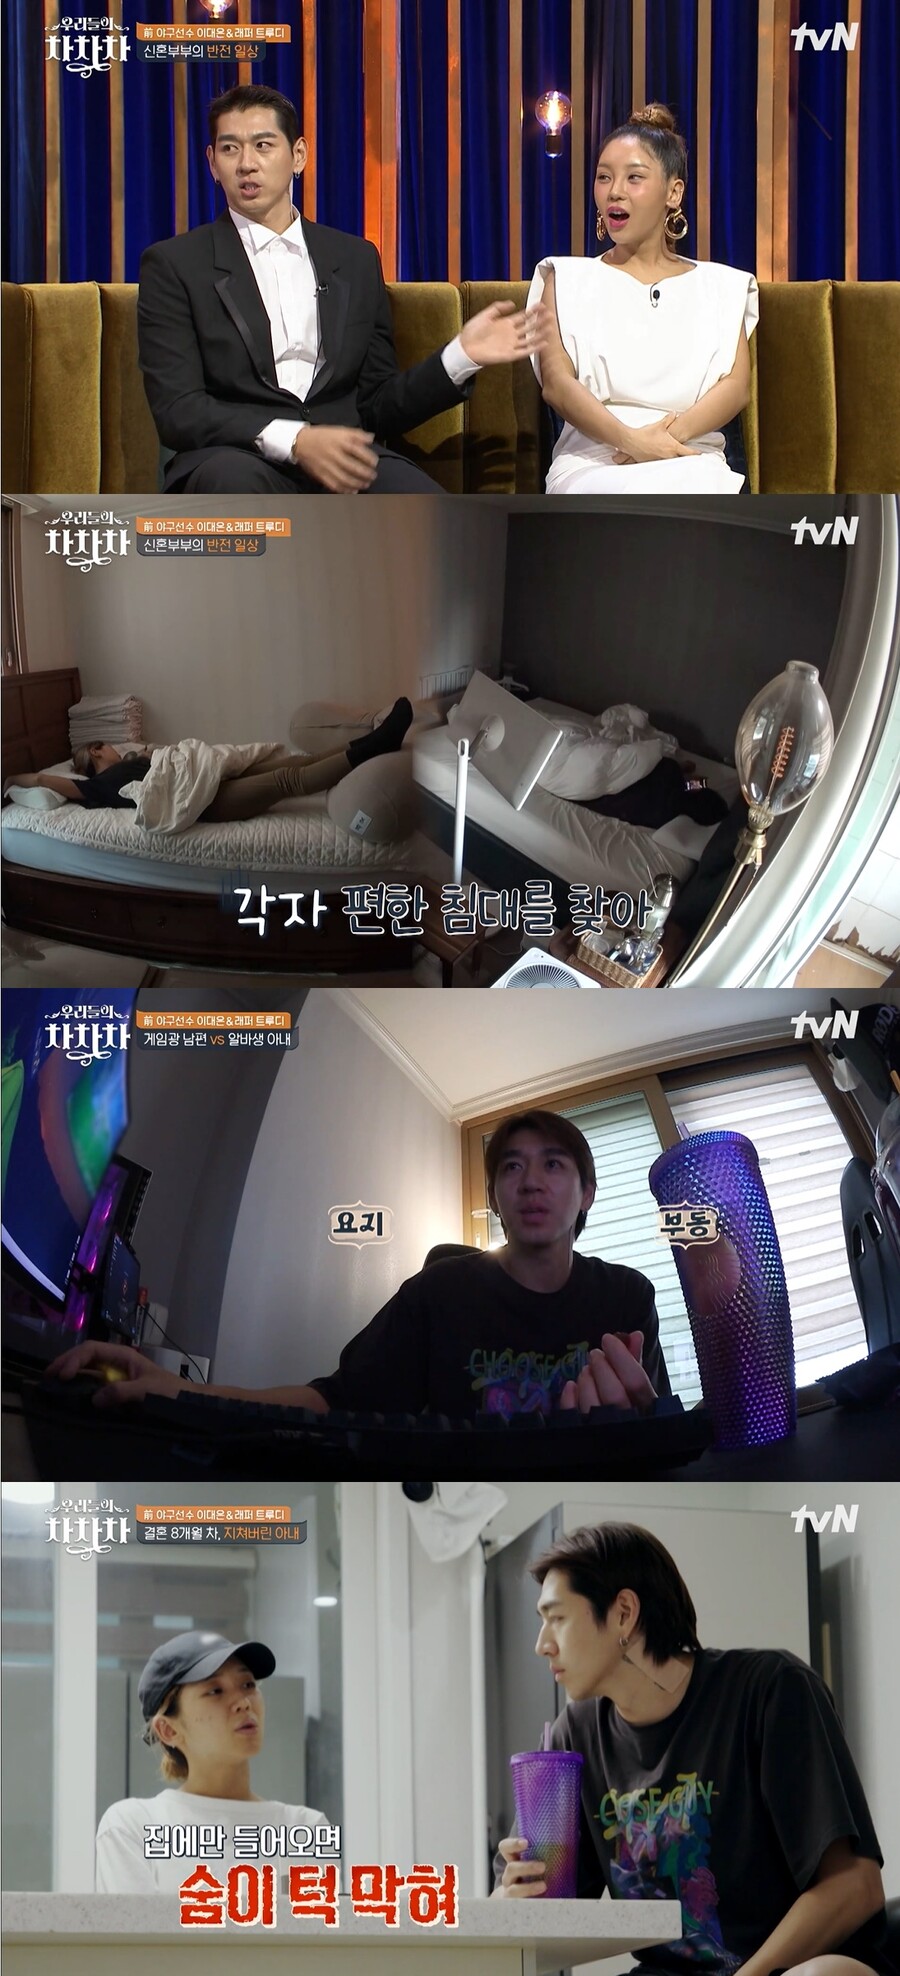 ▲ tvN 예능프로그램 '우리들의 차차차' 트루디, 이대은 부부. 출처| tvN